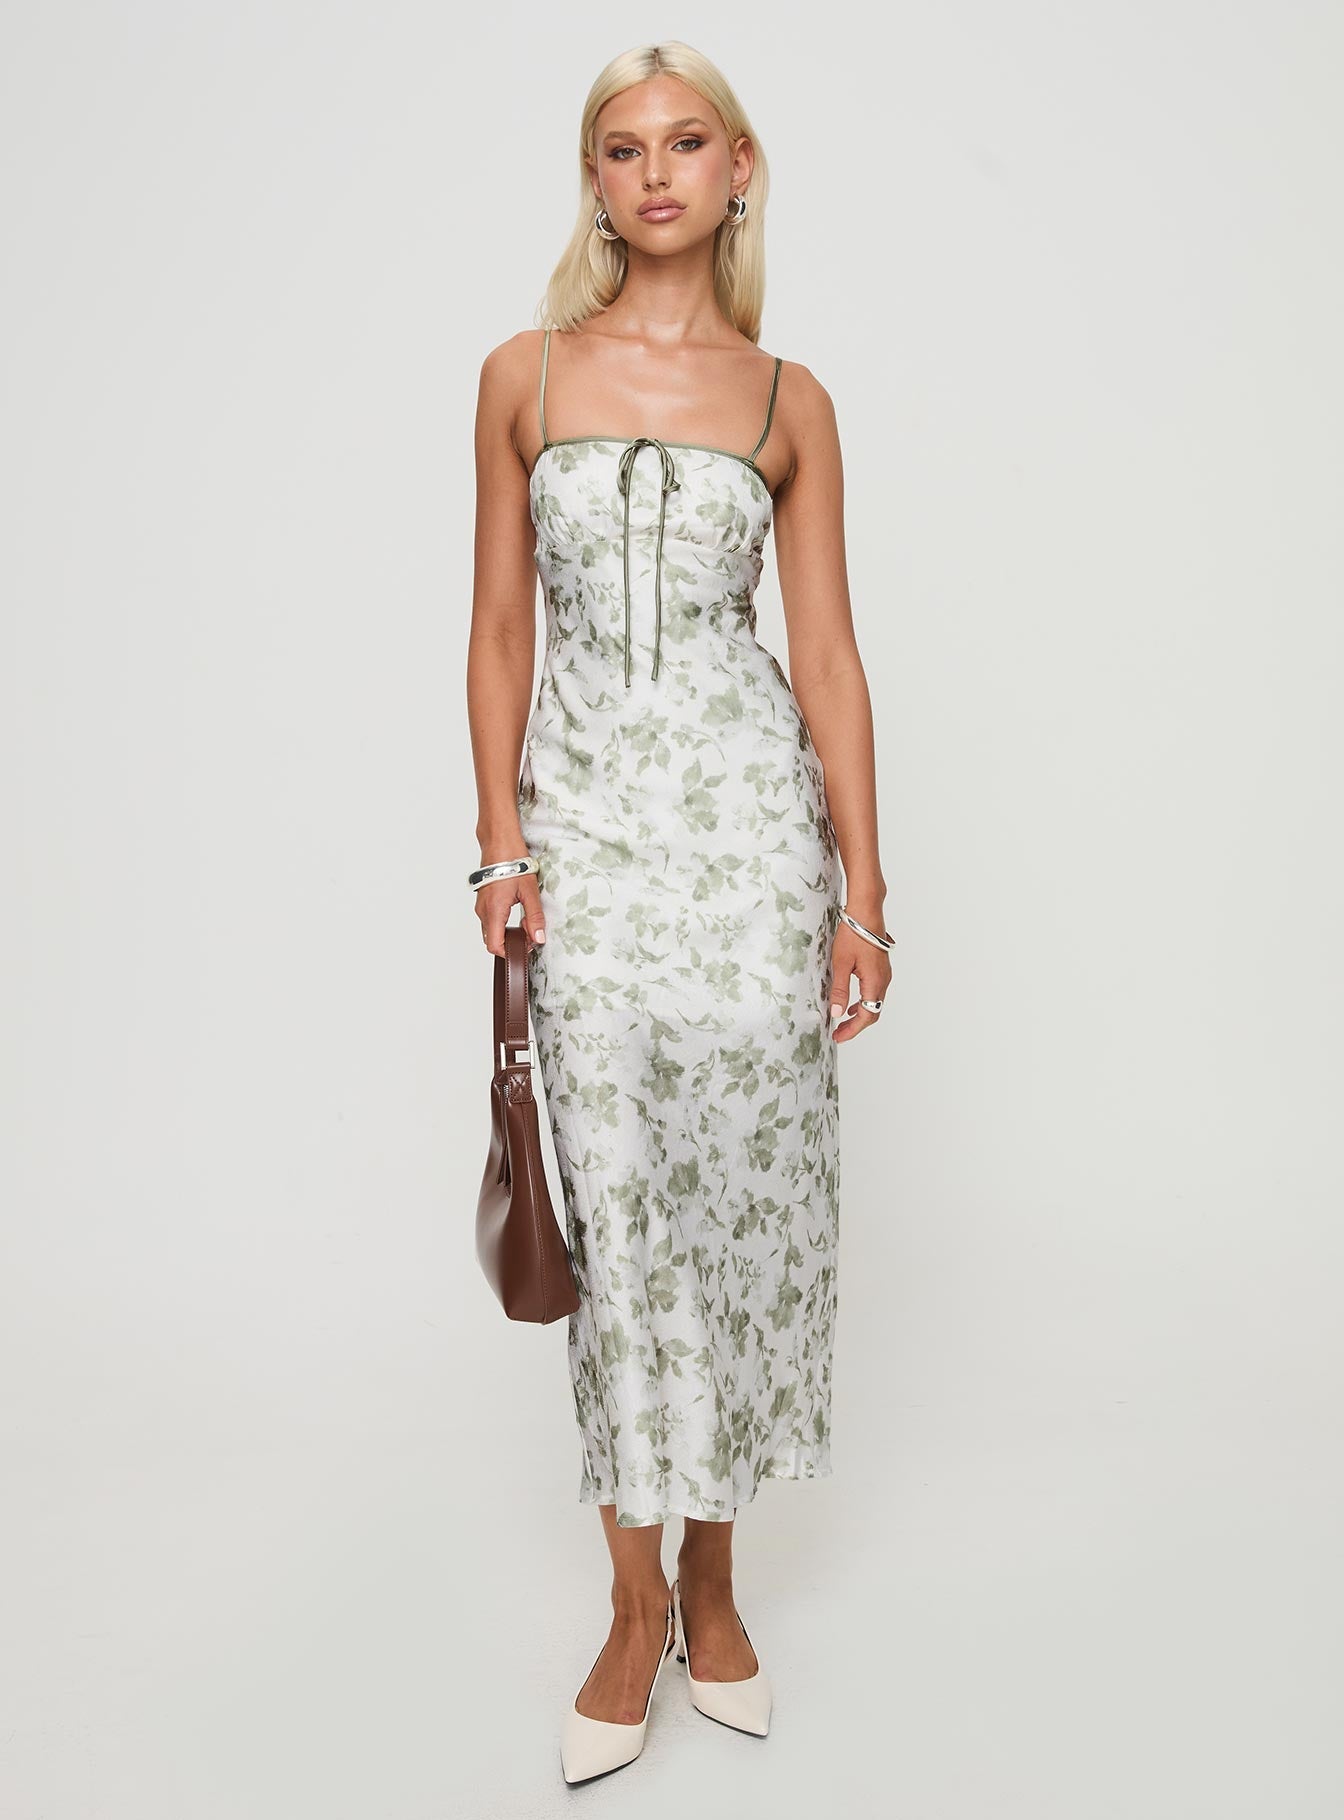 Shop Formal Dress - Vasiliki Maxi Dress White / Green Floral sixth image